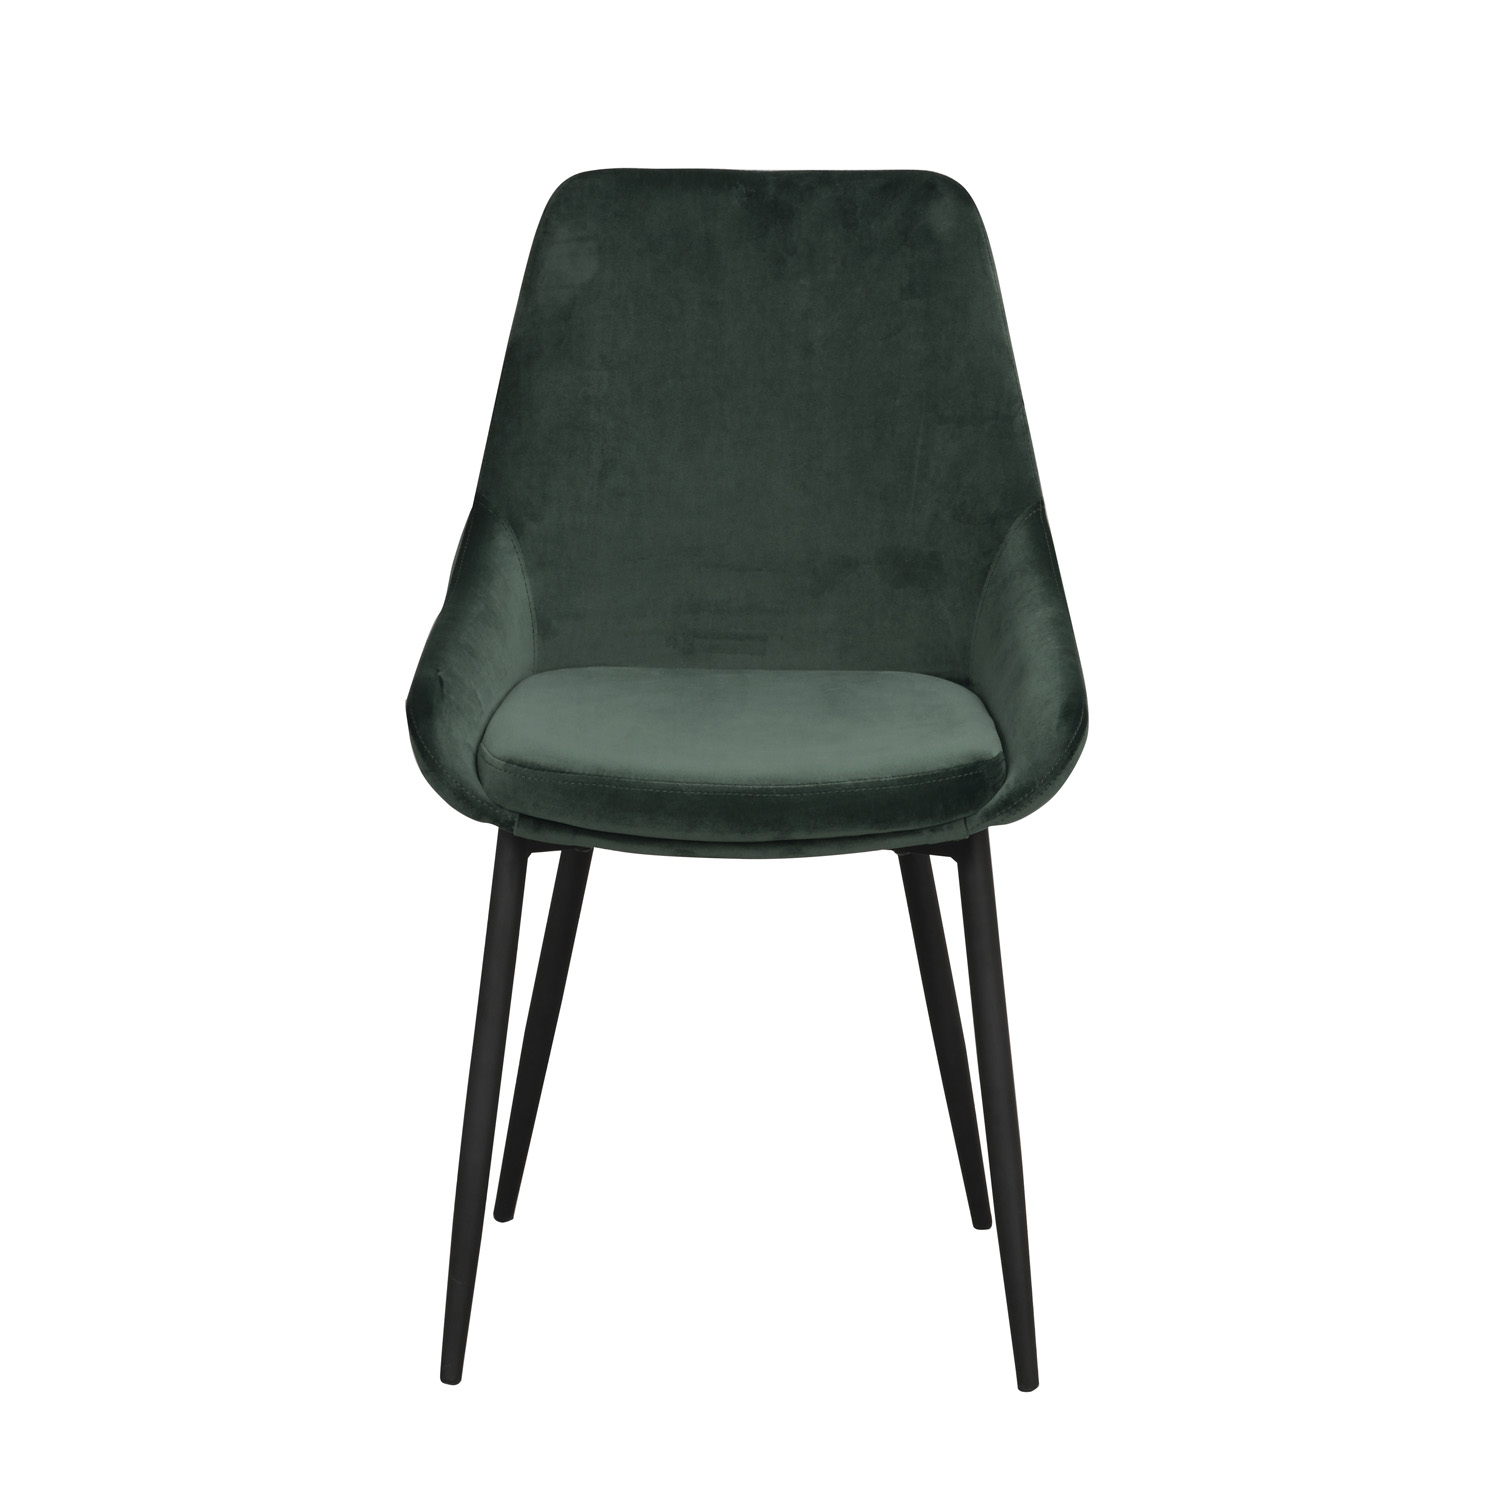 ROWICO Sierra spisebordsstol - grøn polyester og sort metal